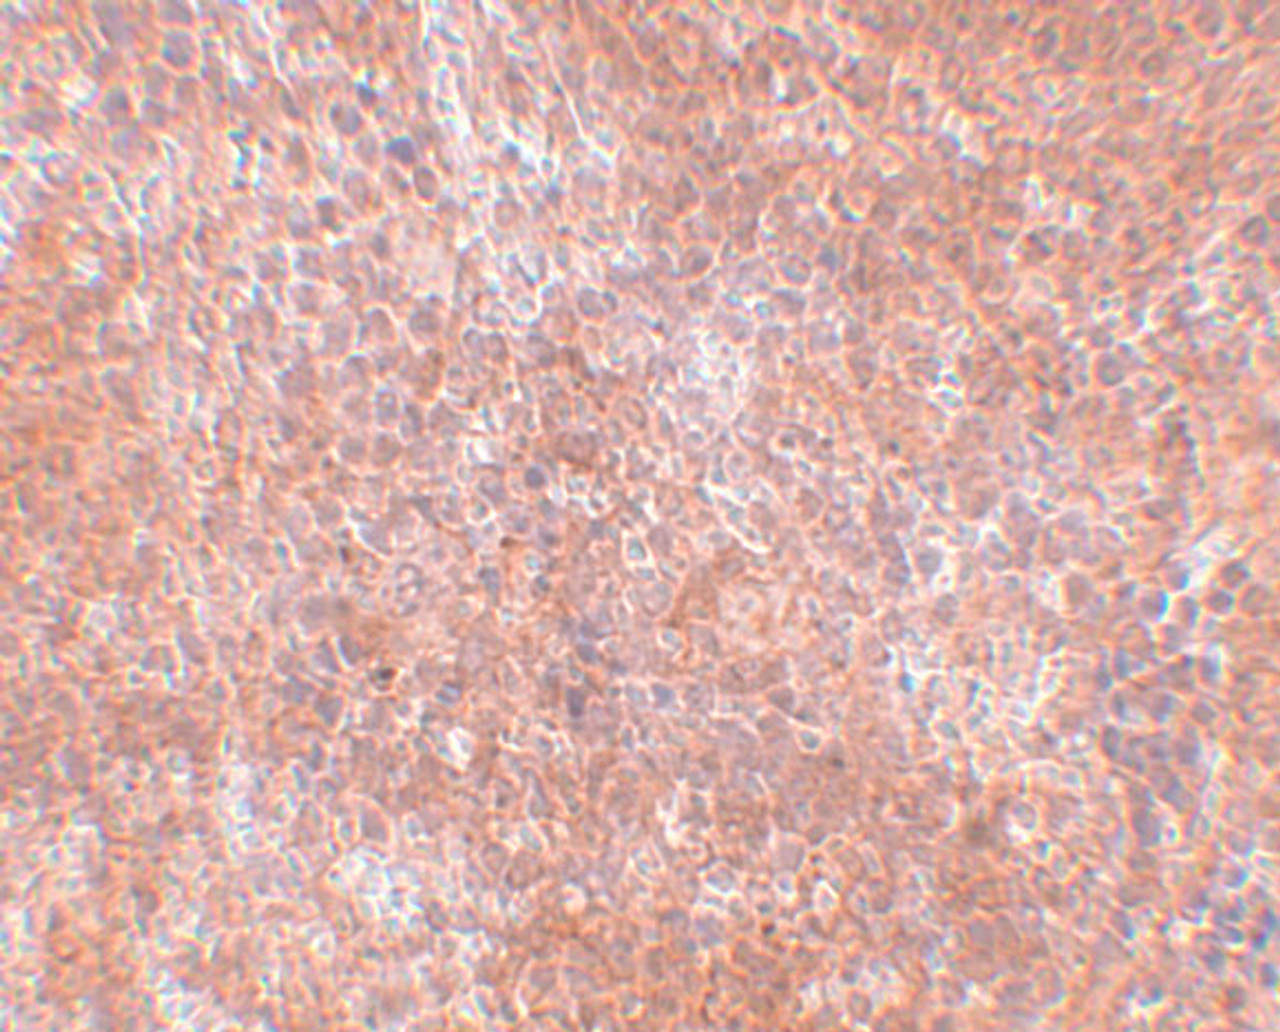 Immunohistochemistry of JMJD8 in mouse spleen tissue with JMJD8 antibody at 2.5 ug/mL.